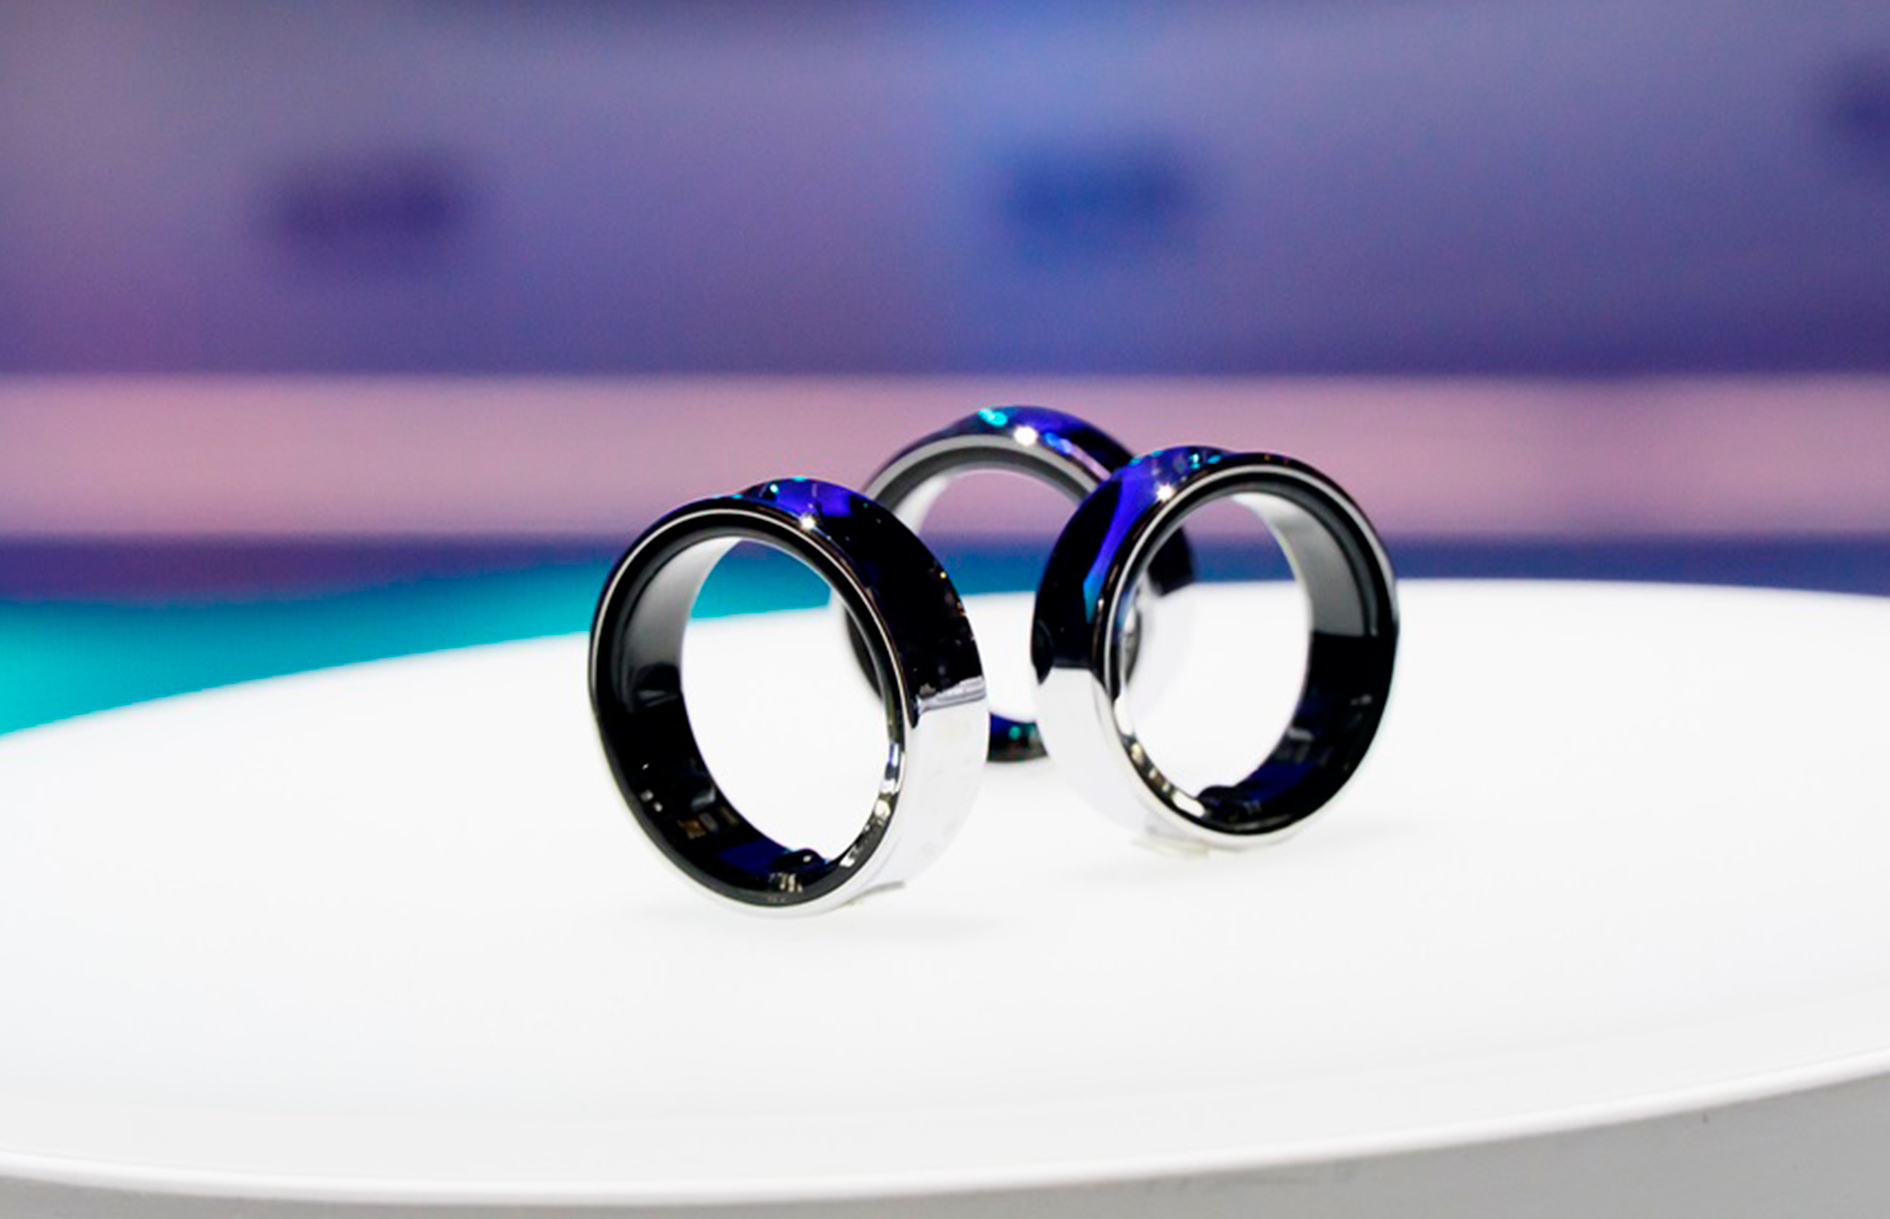 Полноценный выпуск умного кольца Galaxy Ring состоится в июле